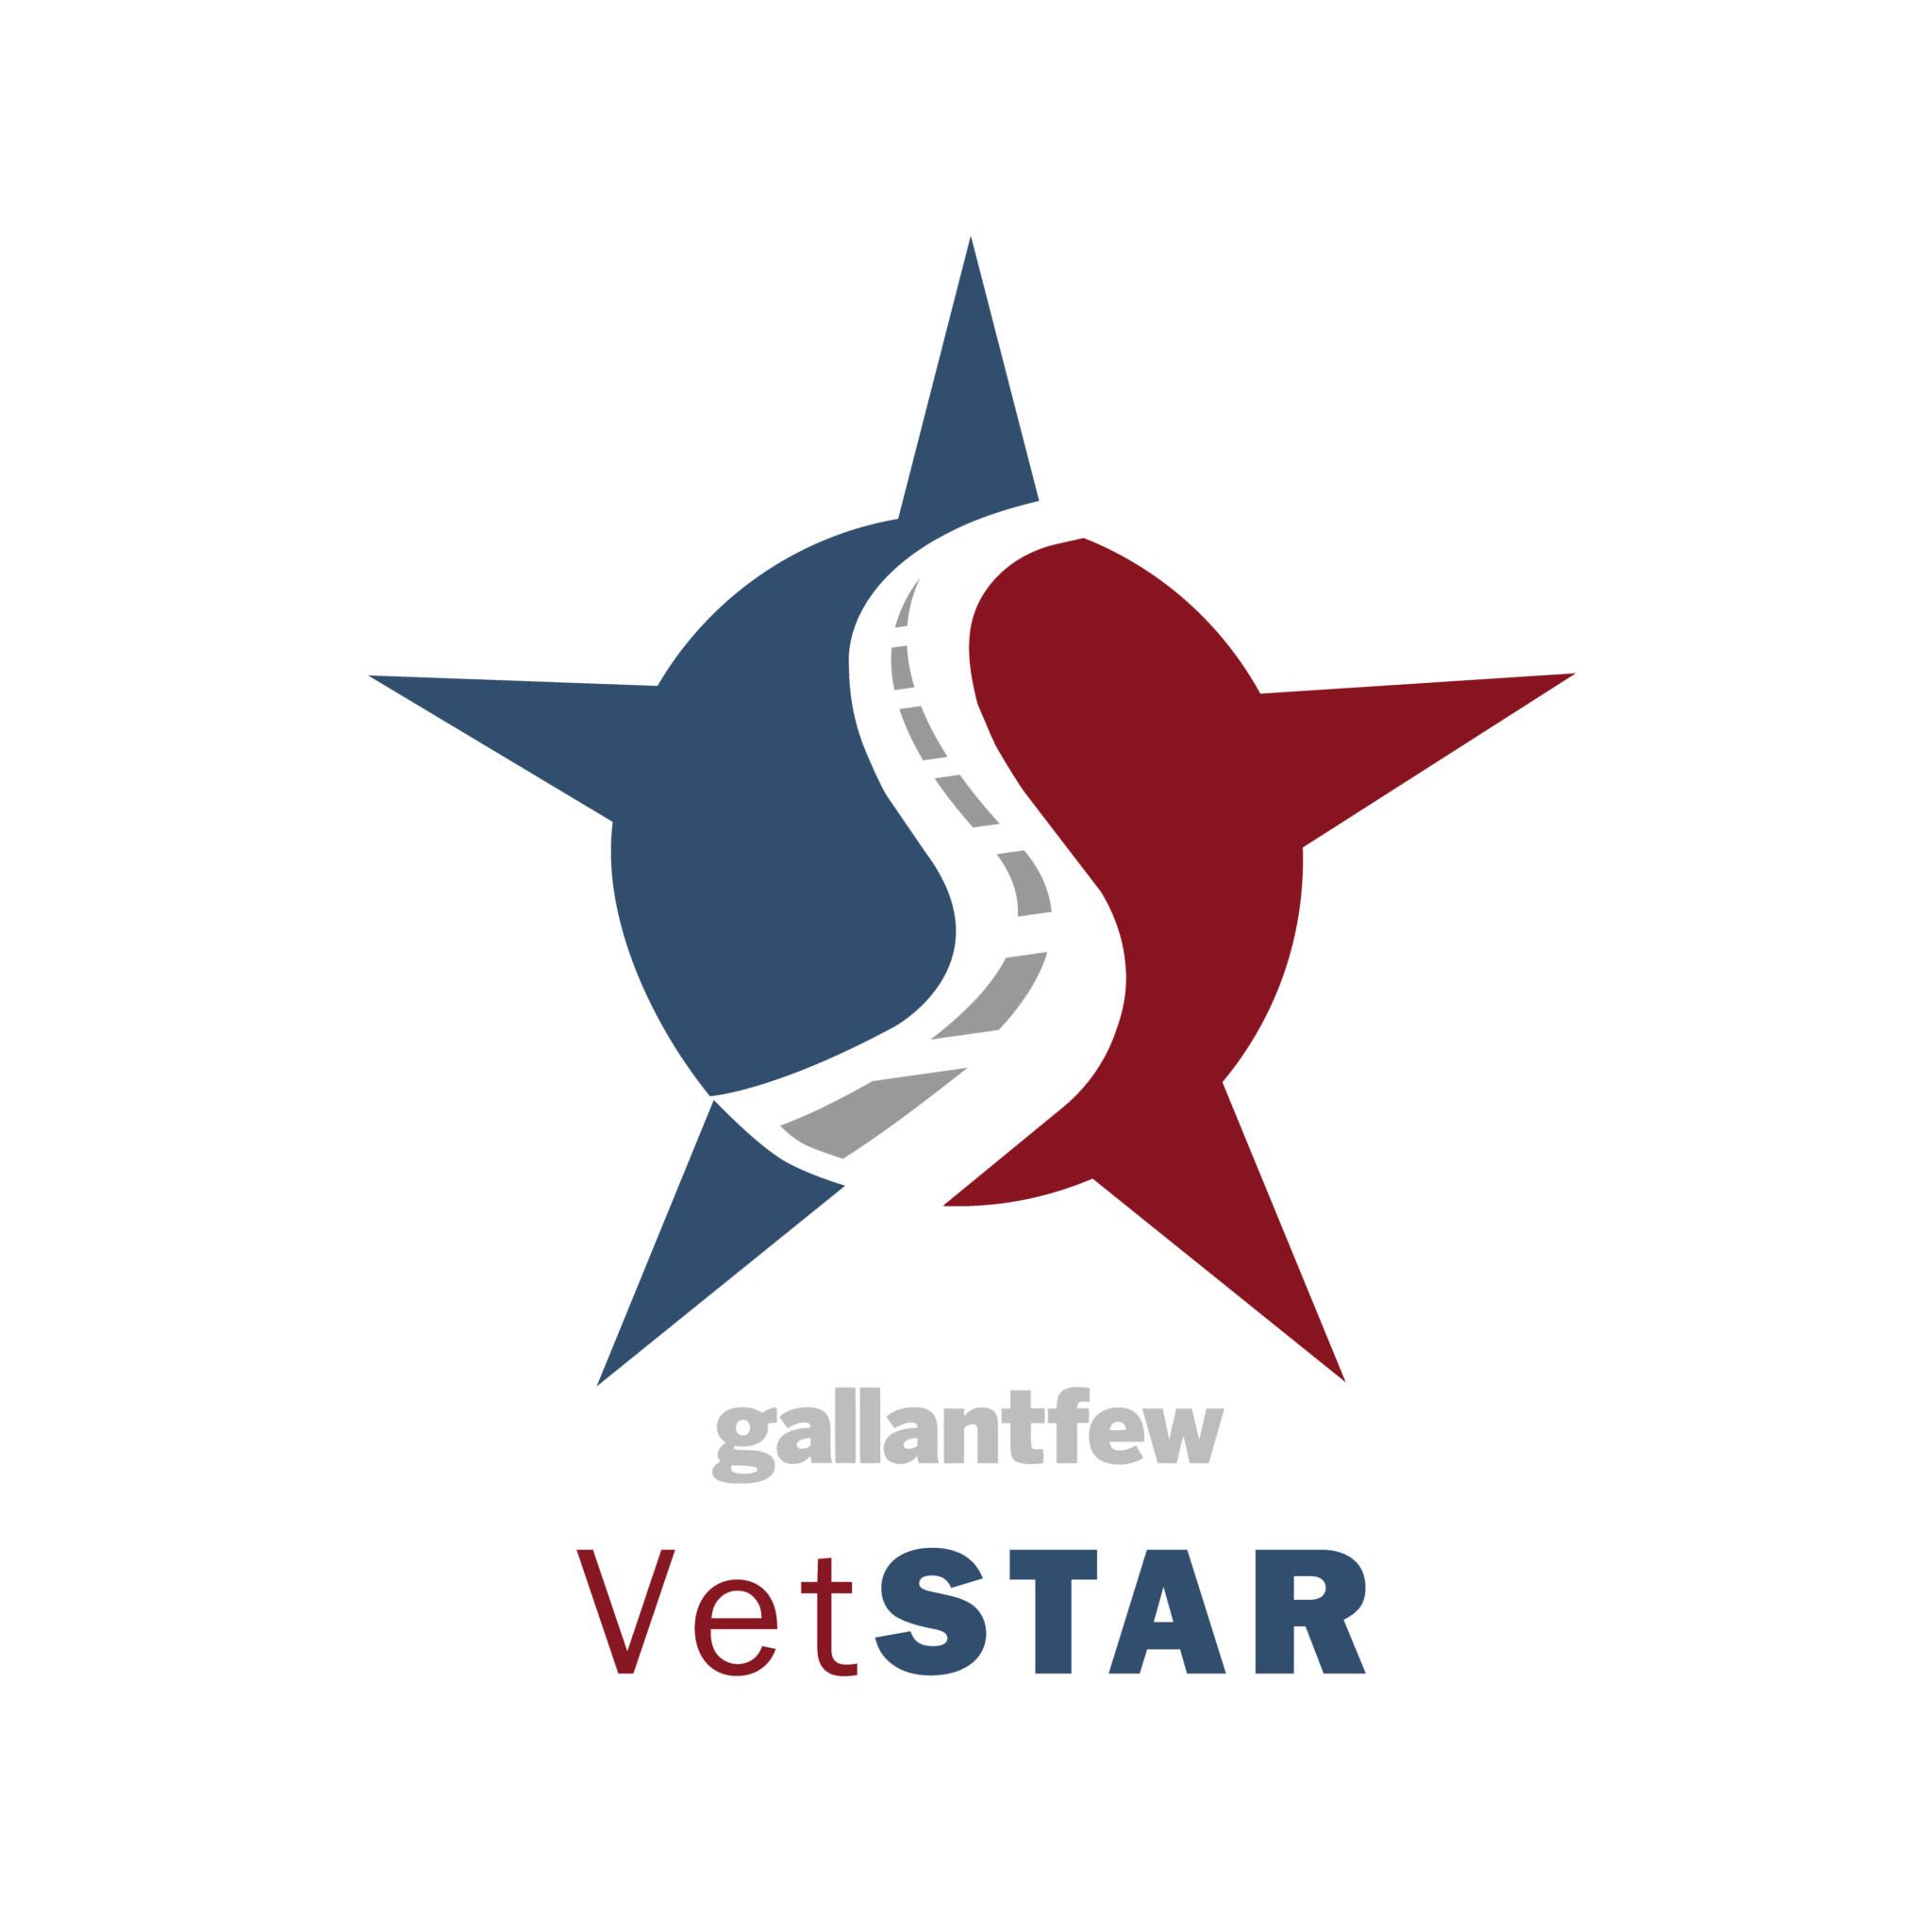 VetSTAR full colo logo